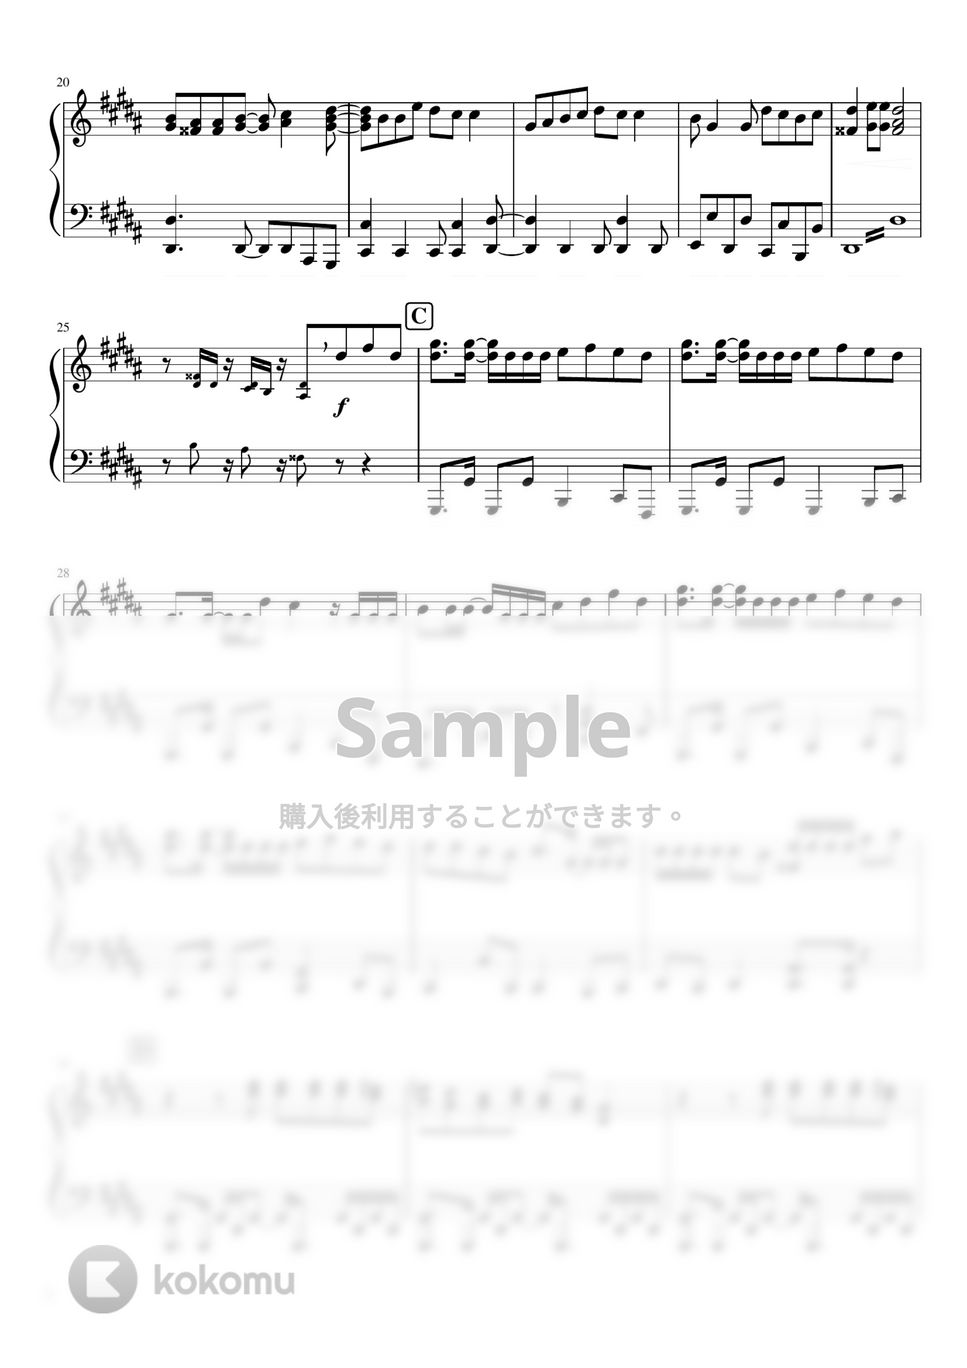 なにわ男子 - LAI-LA-LA (なにわ男子2nd Album『POPMALL』) by ピアノぷりん